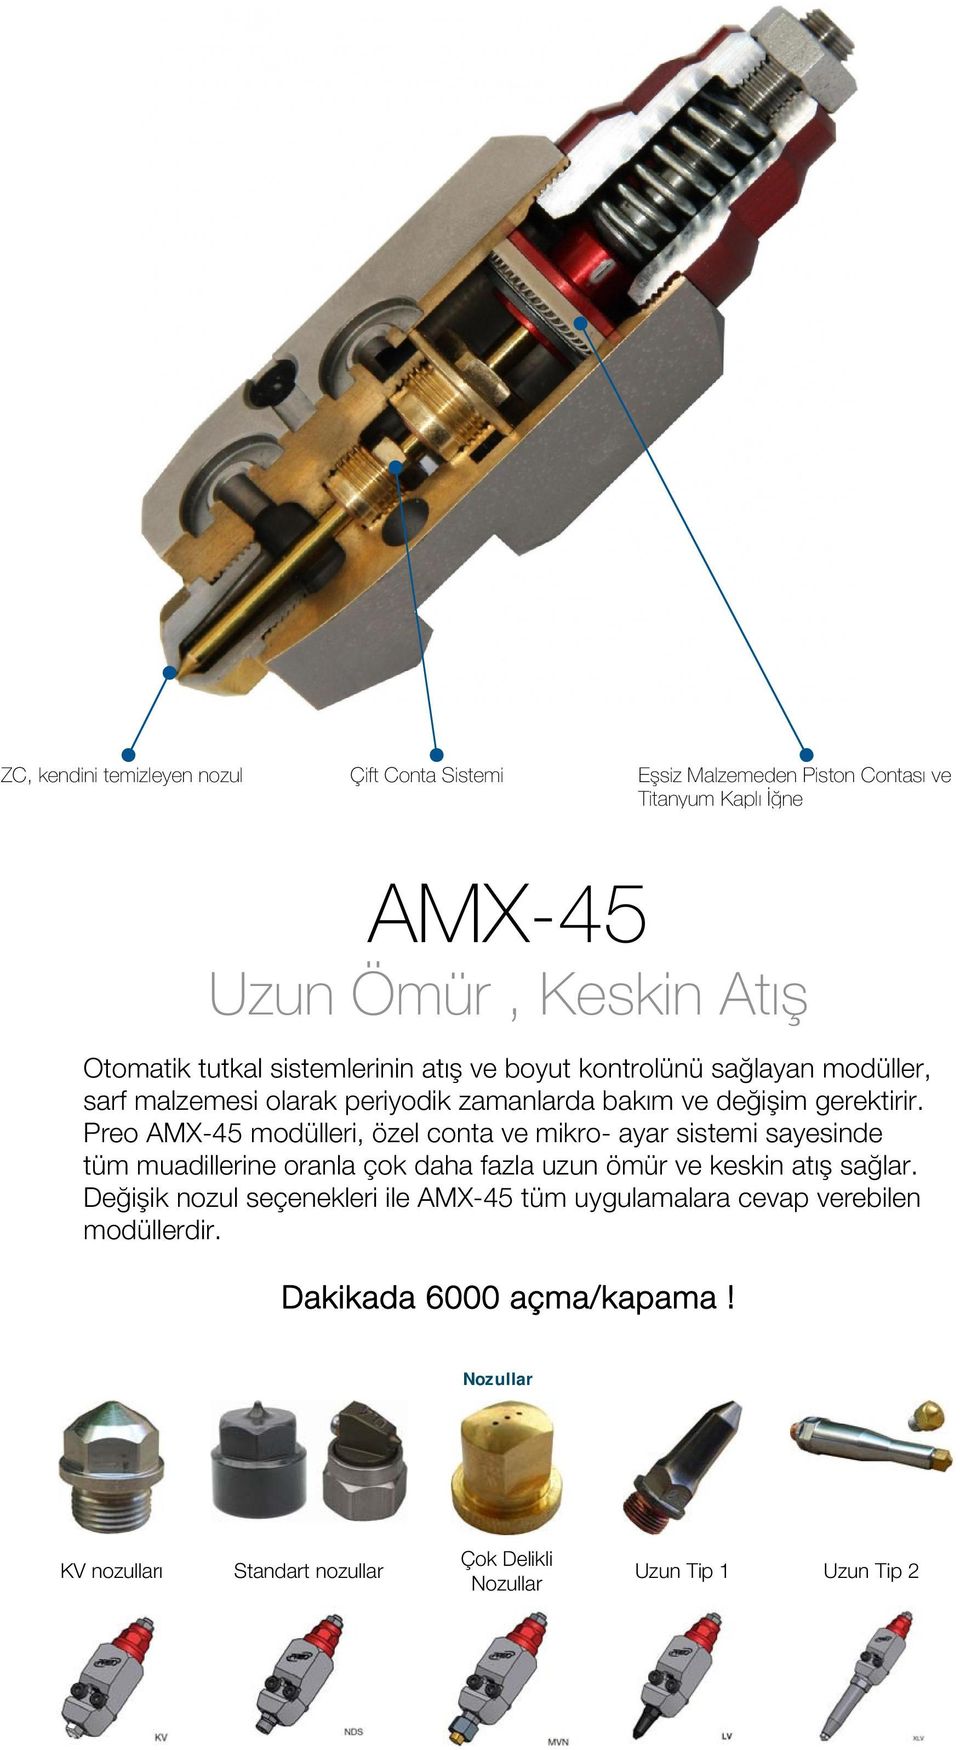 Preo AMX-45 modülleri, özel conta ve mikro- ayar sistemi sayesinde tüm muadillerine oranla çok daha fazla uzun ömür ve keskin atış sağlar.